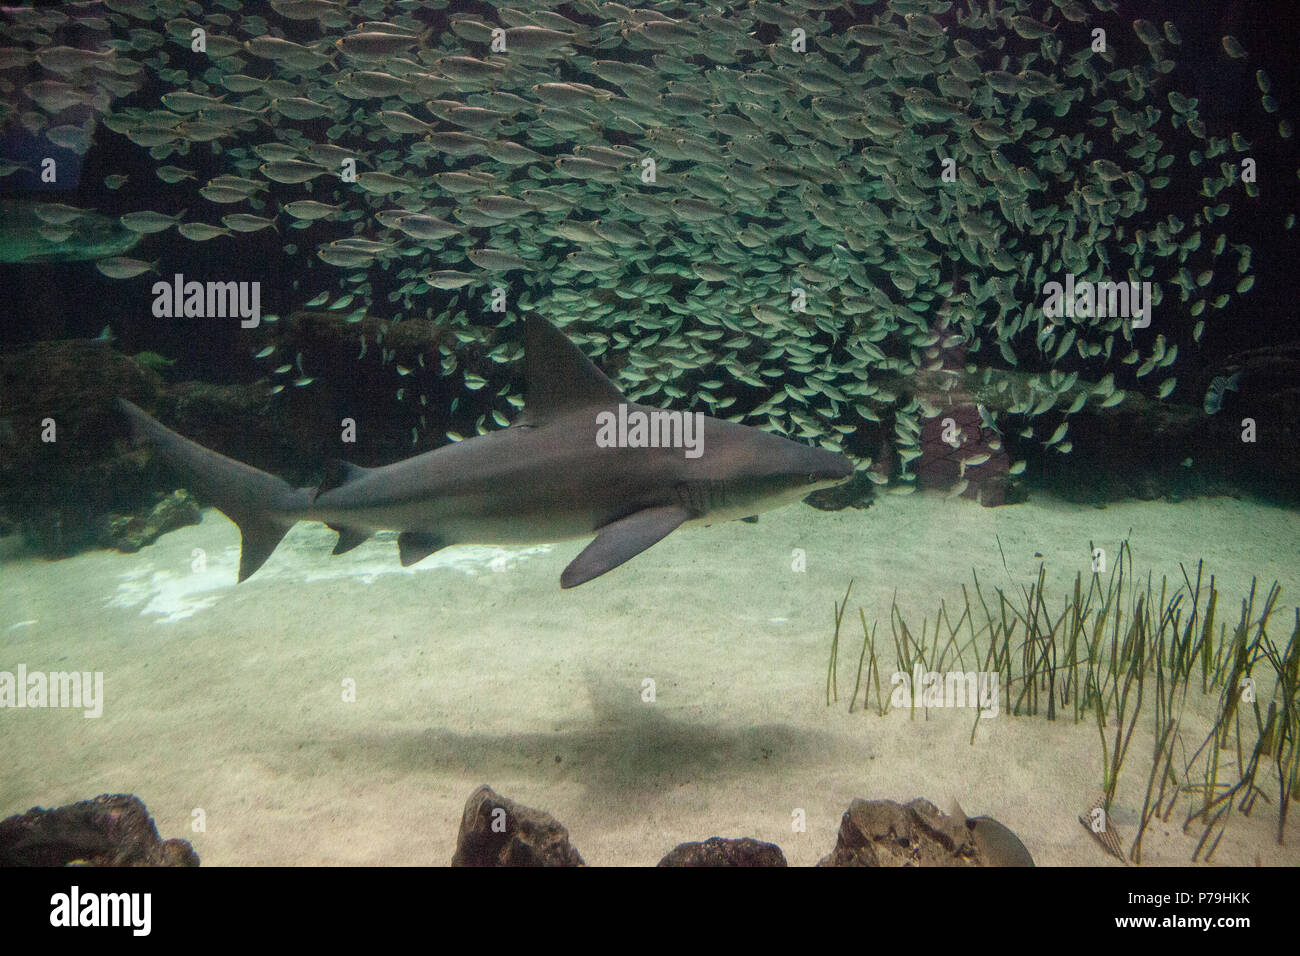 Blacktip shark Carcharhinus limbatus nage le long d'un récif de corail dans les tropiques. Banque D'Images